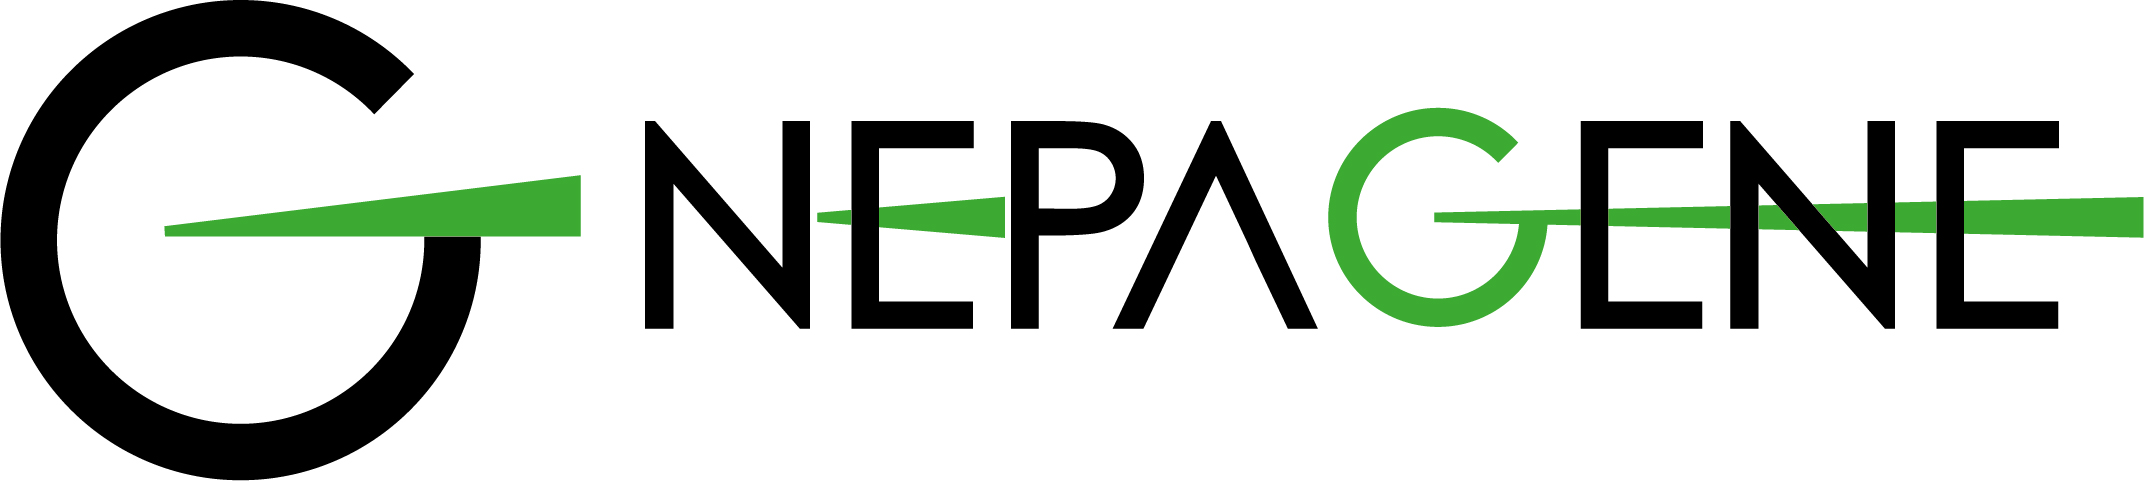 Nepa Gene Co., Ltd. logo